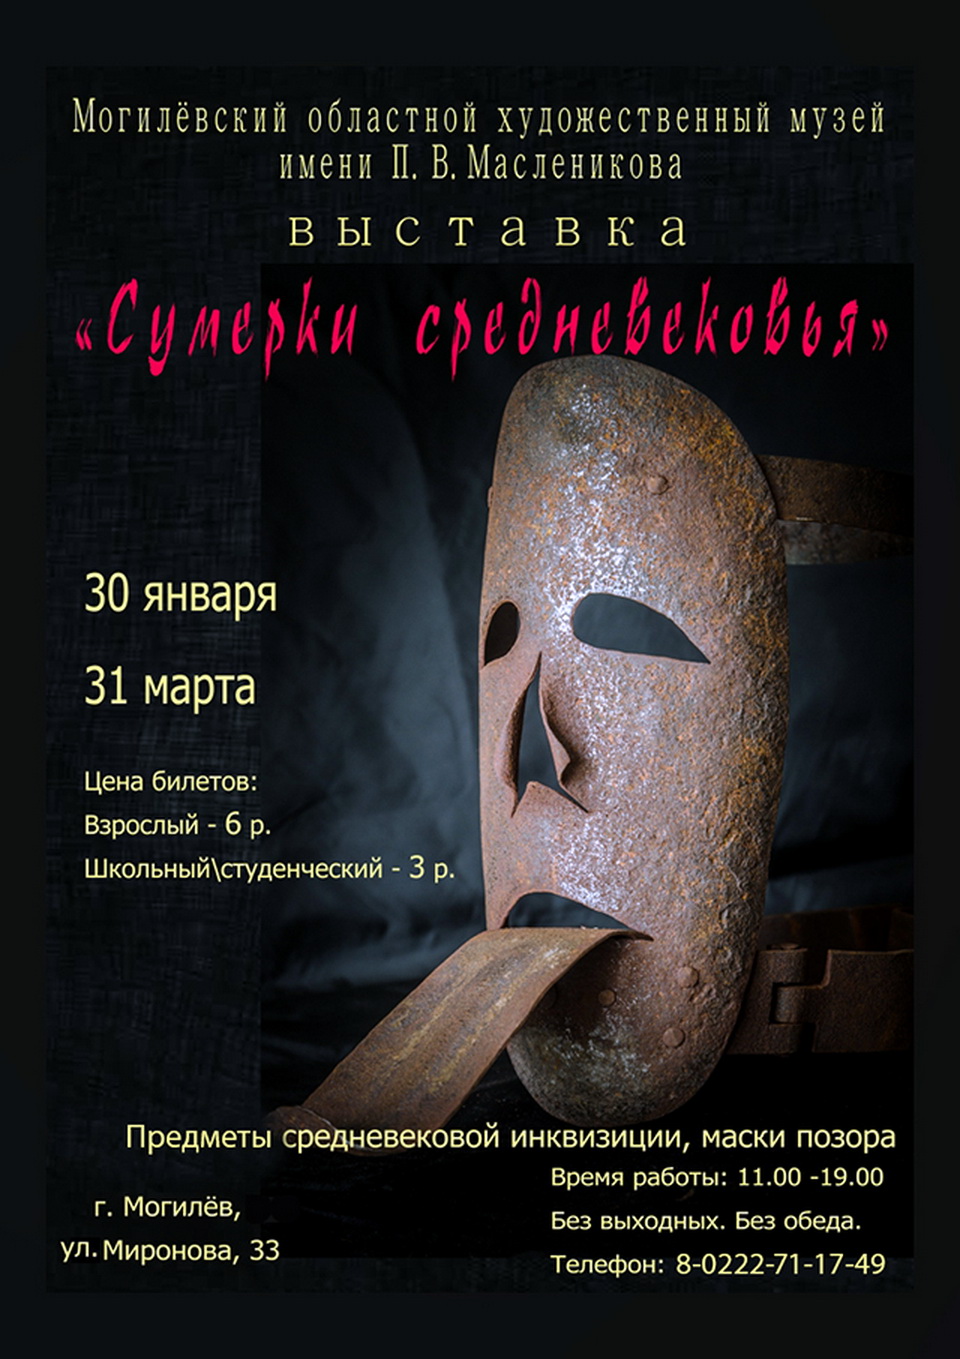 Выставка «Сумерки средневековья» начнет работу в Могилеве 30 января